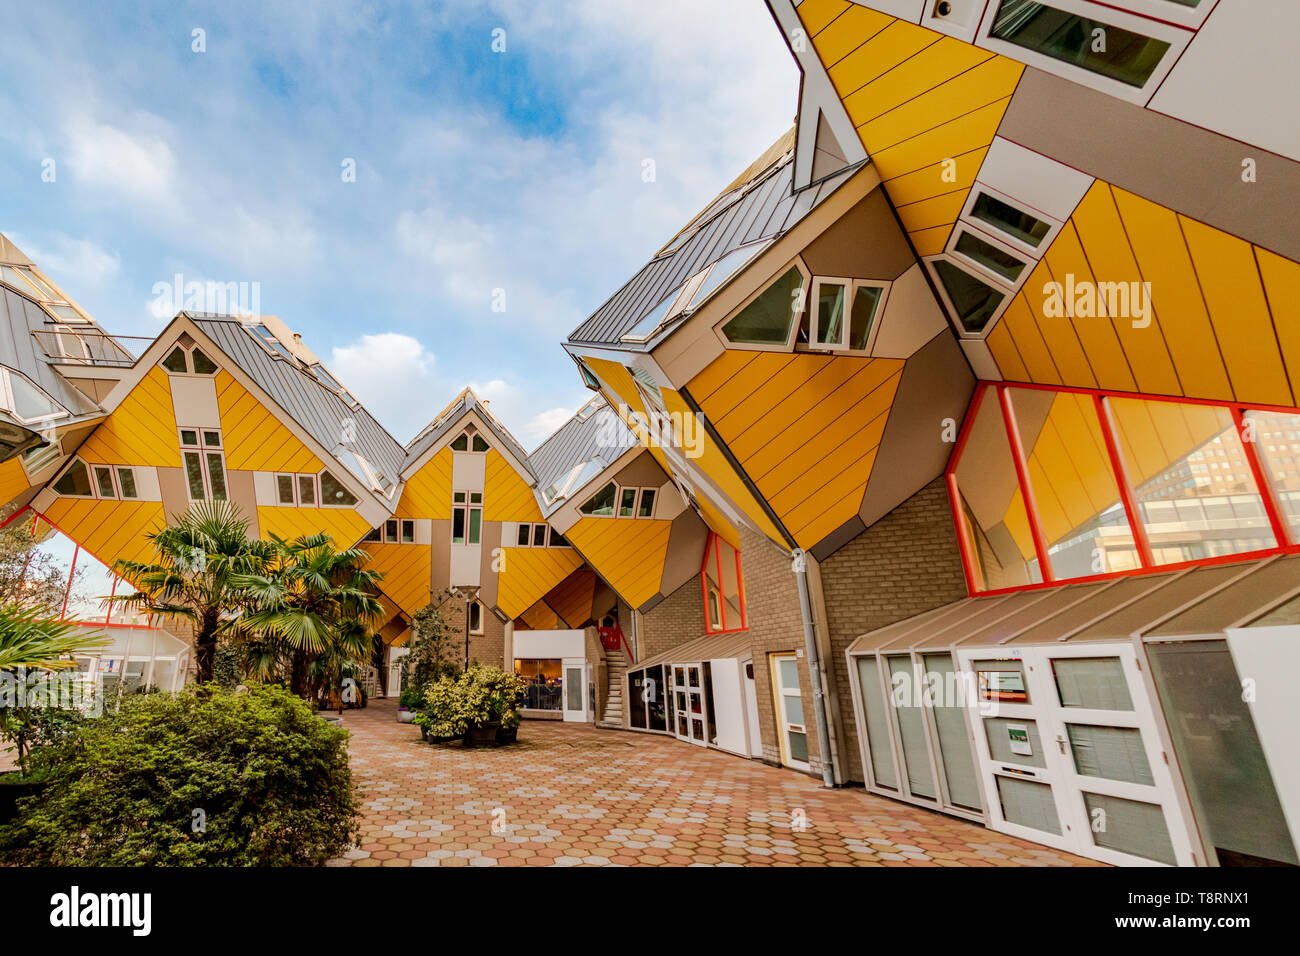 Cube Häuser - Kubuswoningen in Rotterdam Niederlande - Architekten Piet Blom-Gelbe Häuser - moderne Architektur - moderne Wohnungen - modernes Haus Stockfoto